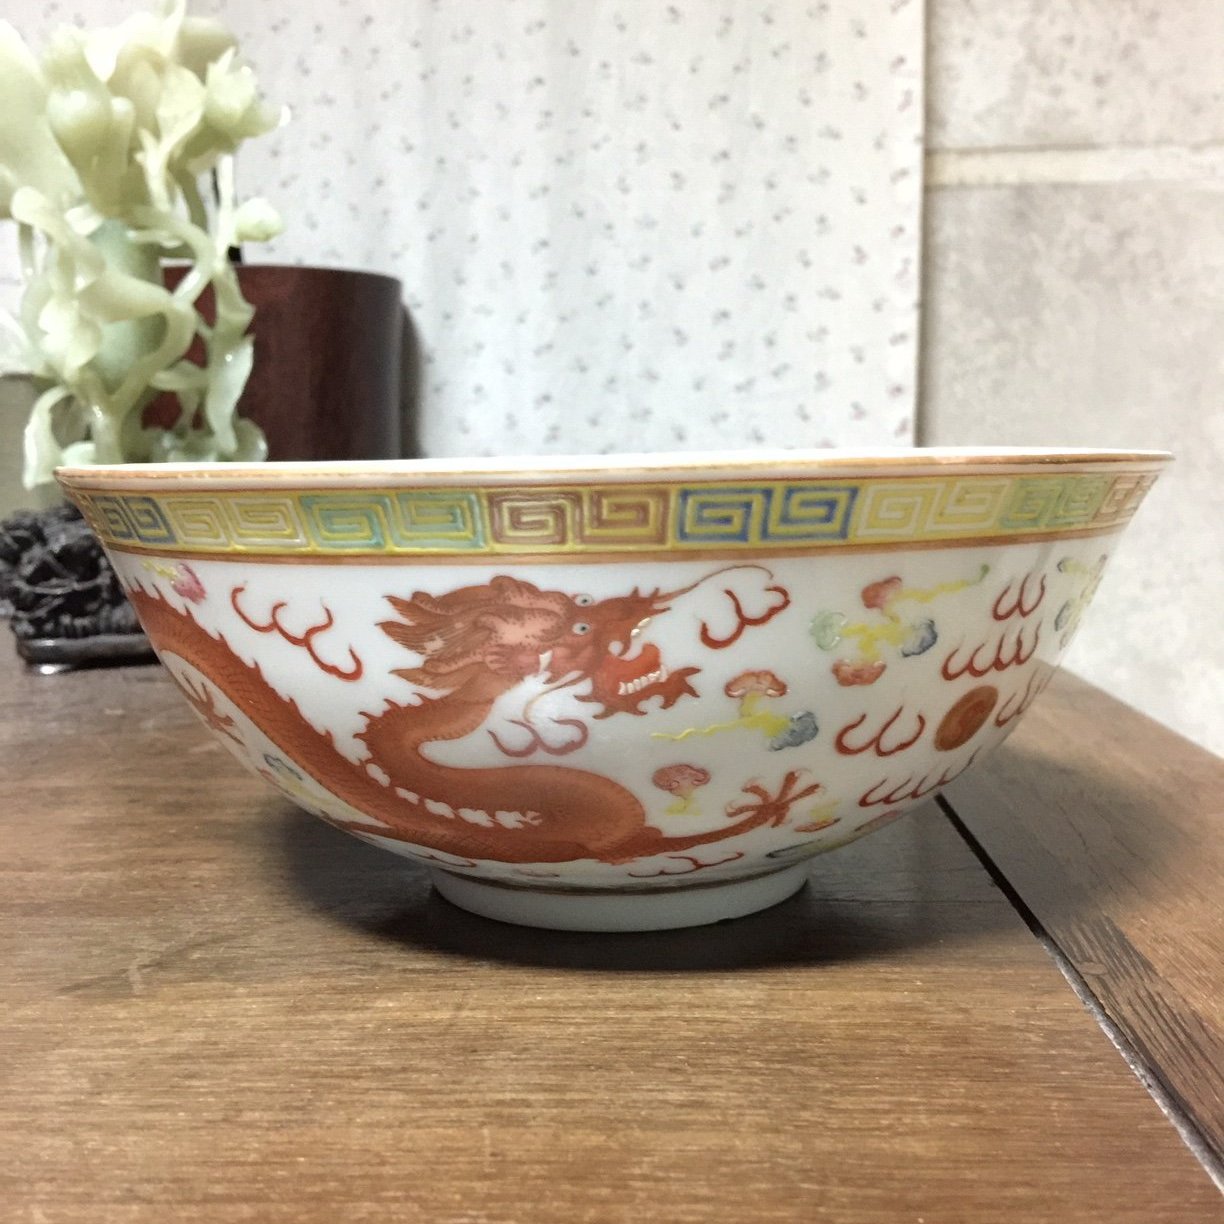 代引き手数料無料 中国 龍泉窯 青磁 印刻花文 茶碗 V R4254 美術品 